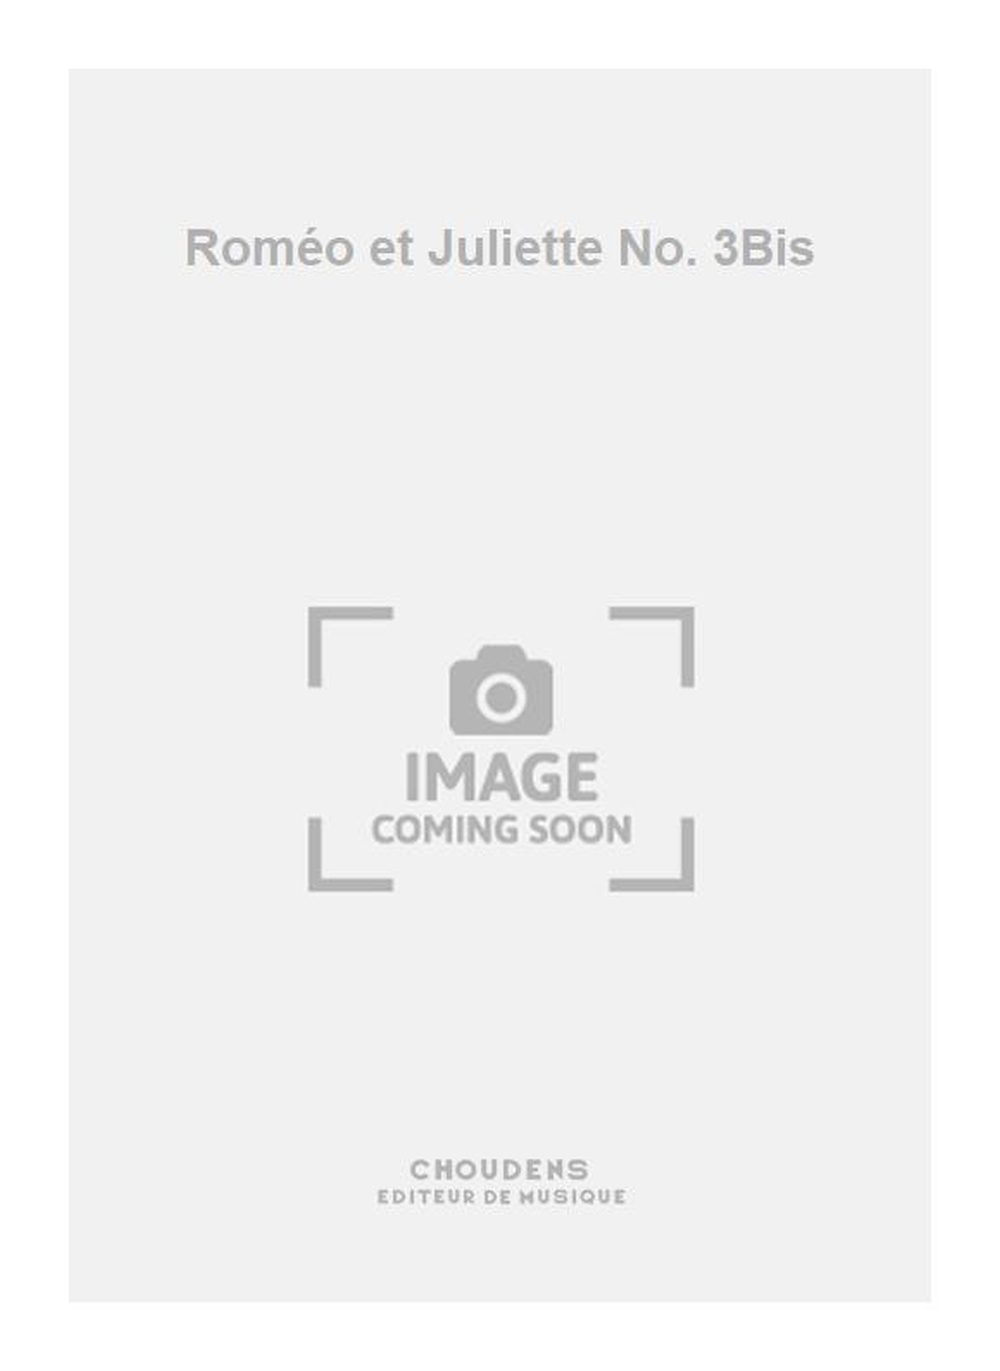 Romo et Juliette No. 3Bis